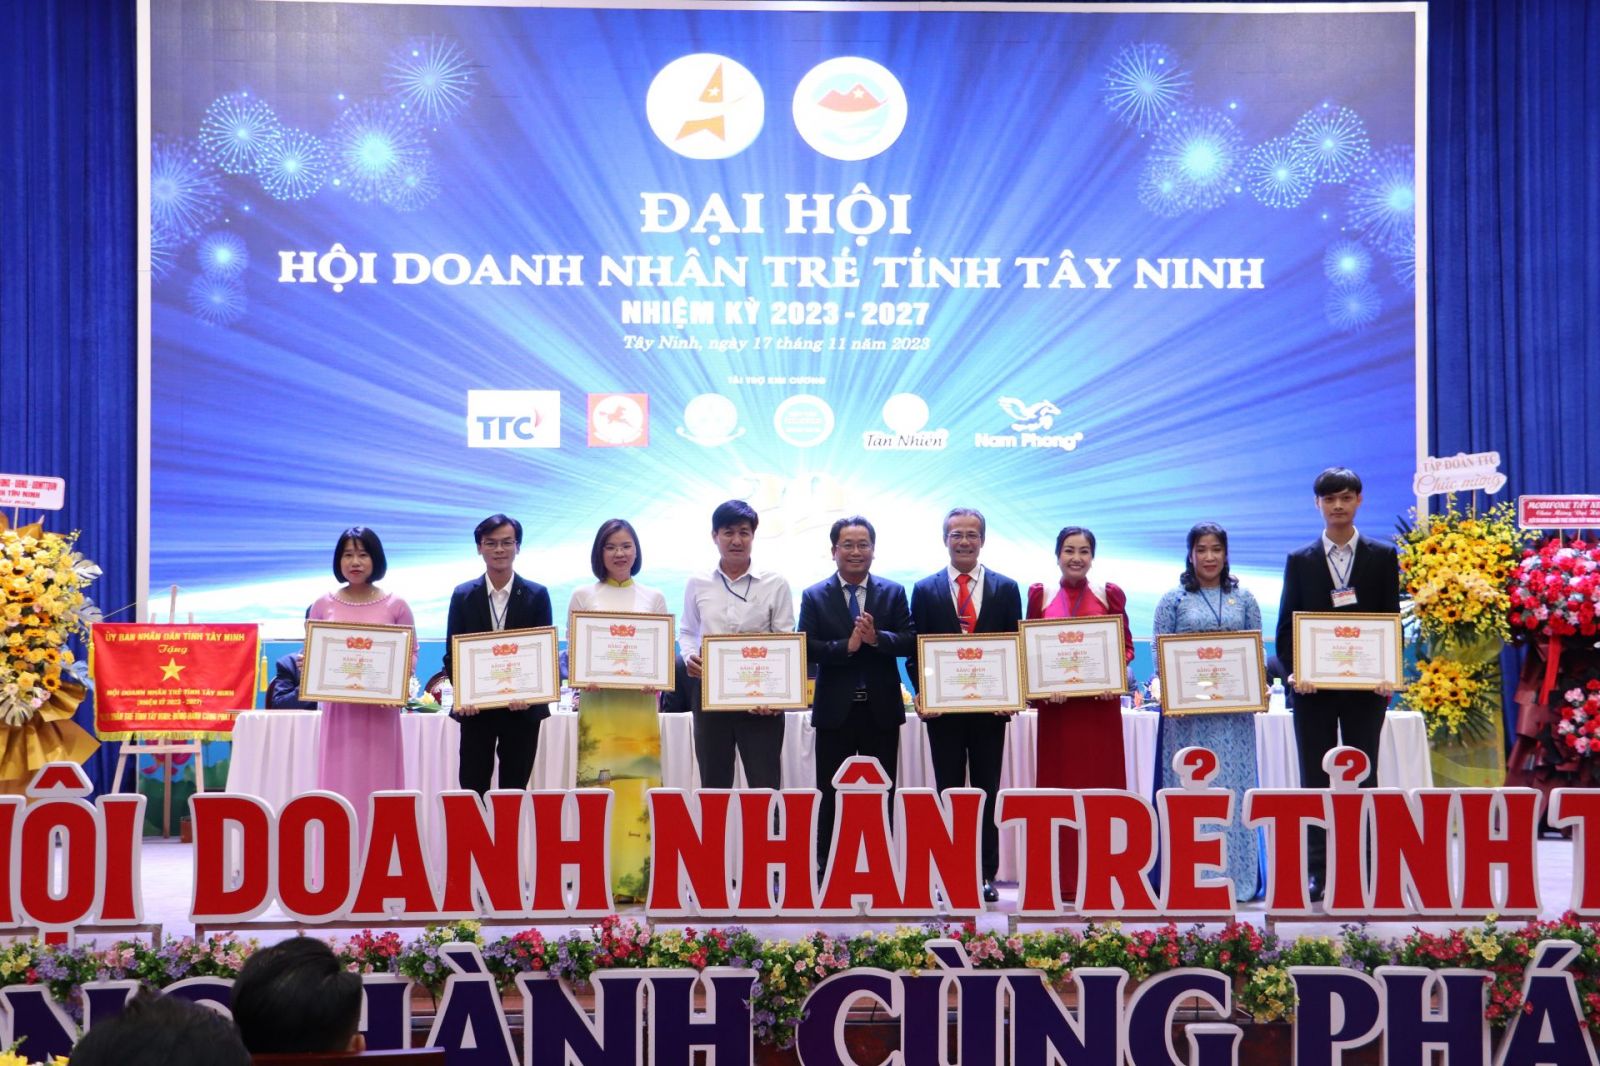 rung ương Hội Doanh nhân trẻ Việt Nam tặng bằng khen cho thành viên BCH nhiệm kỳ 2017 – 2022 và một số hội viên Hội Doanh nhân trẻ về những đóng góp trong công tác hội.